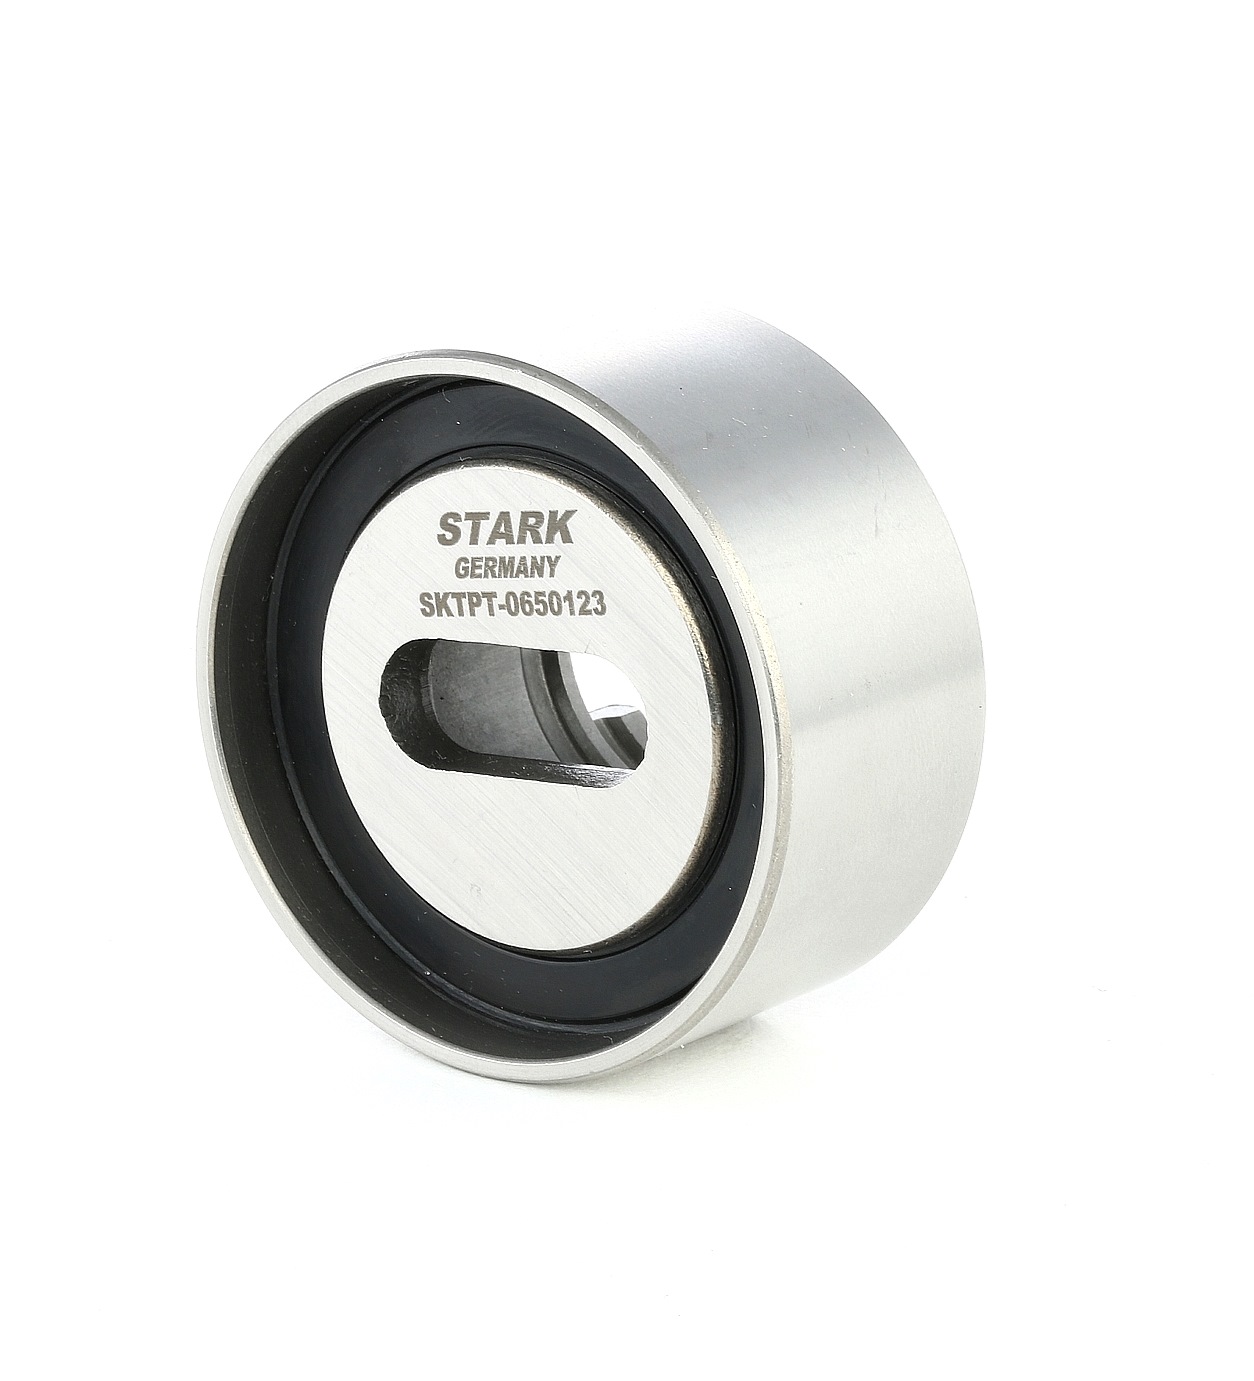 STARK SKTPT-0650123 Timing belt tensioner pulley